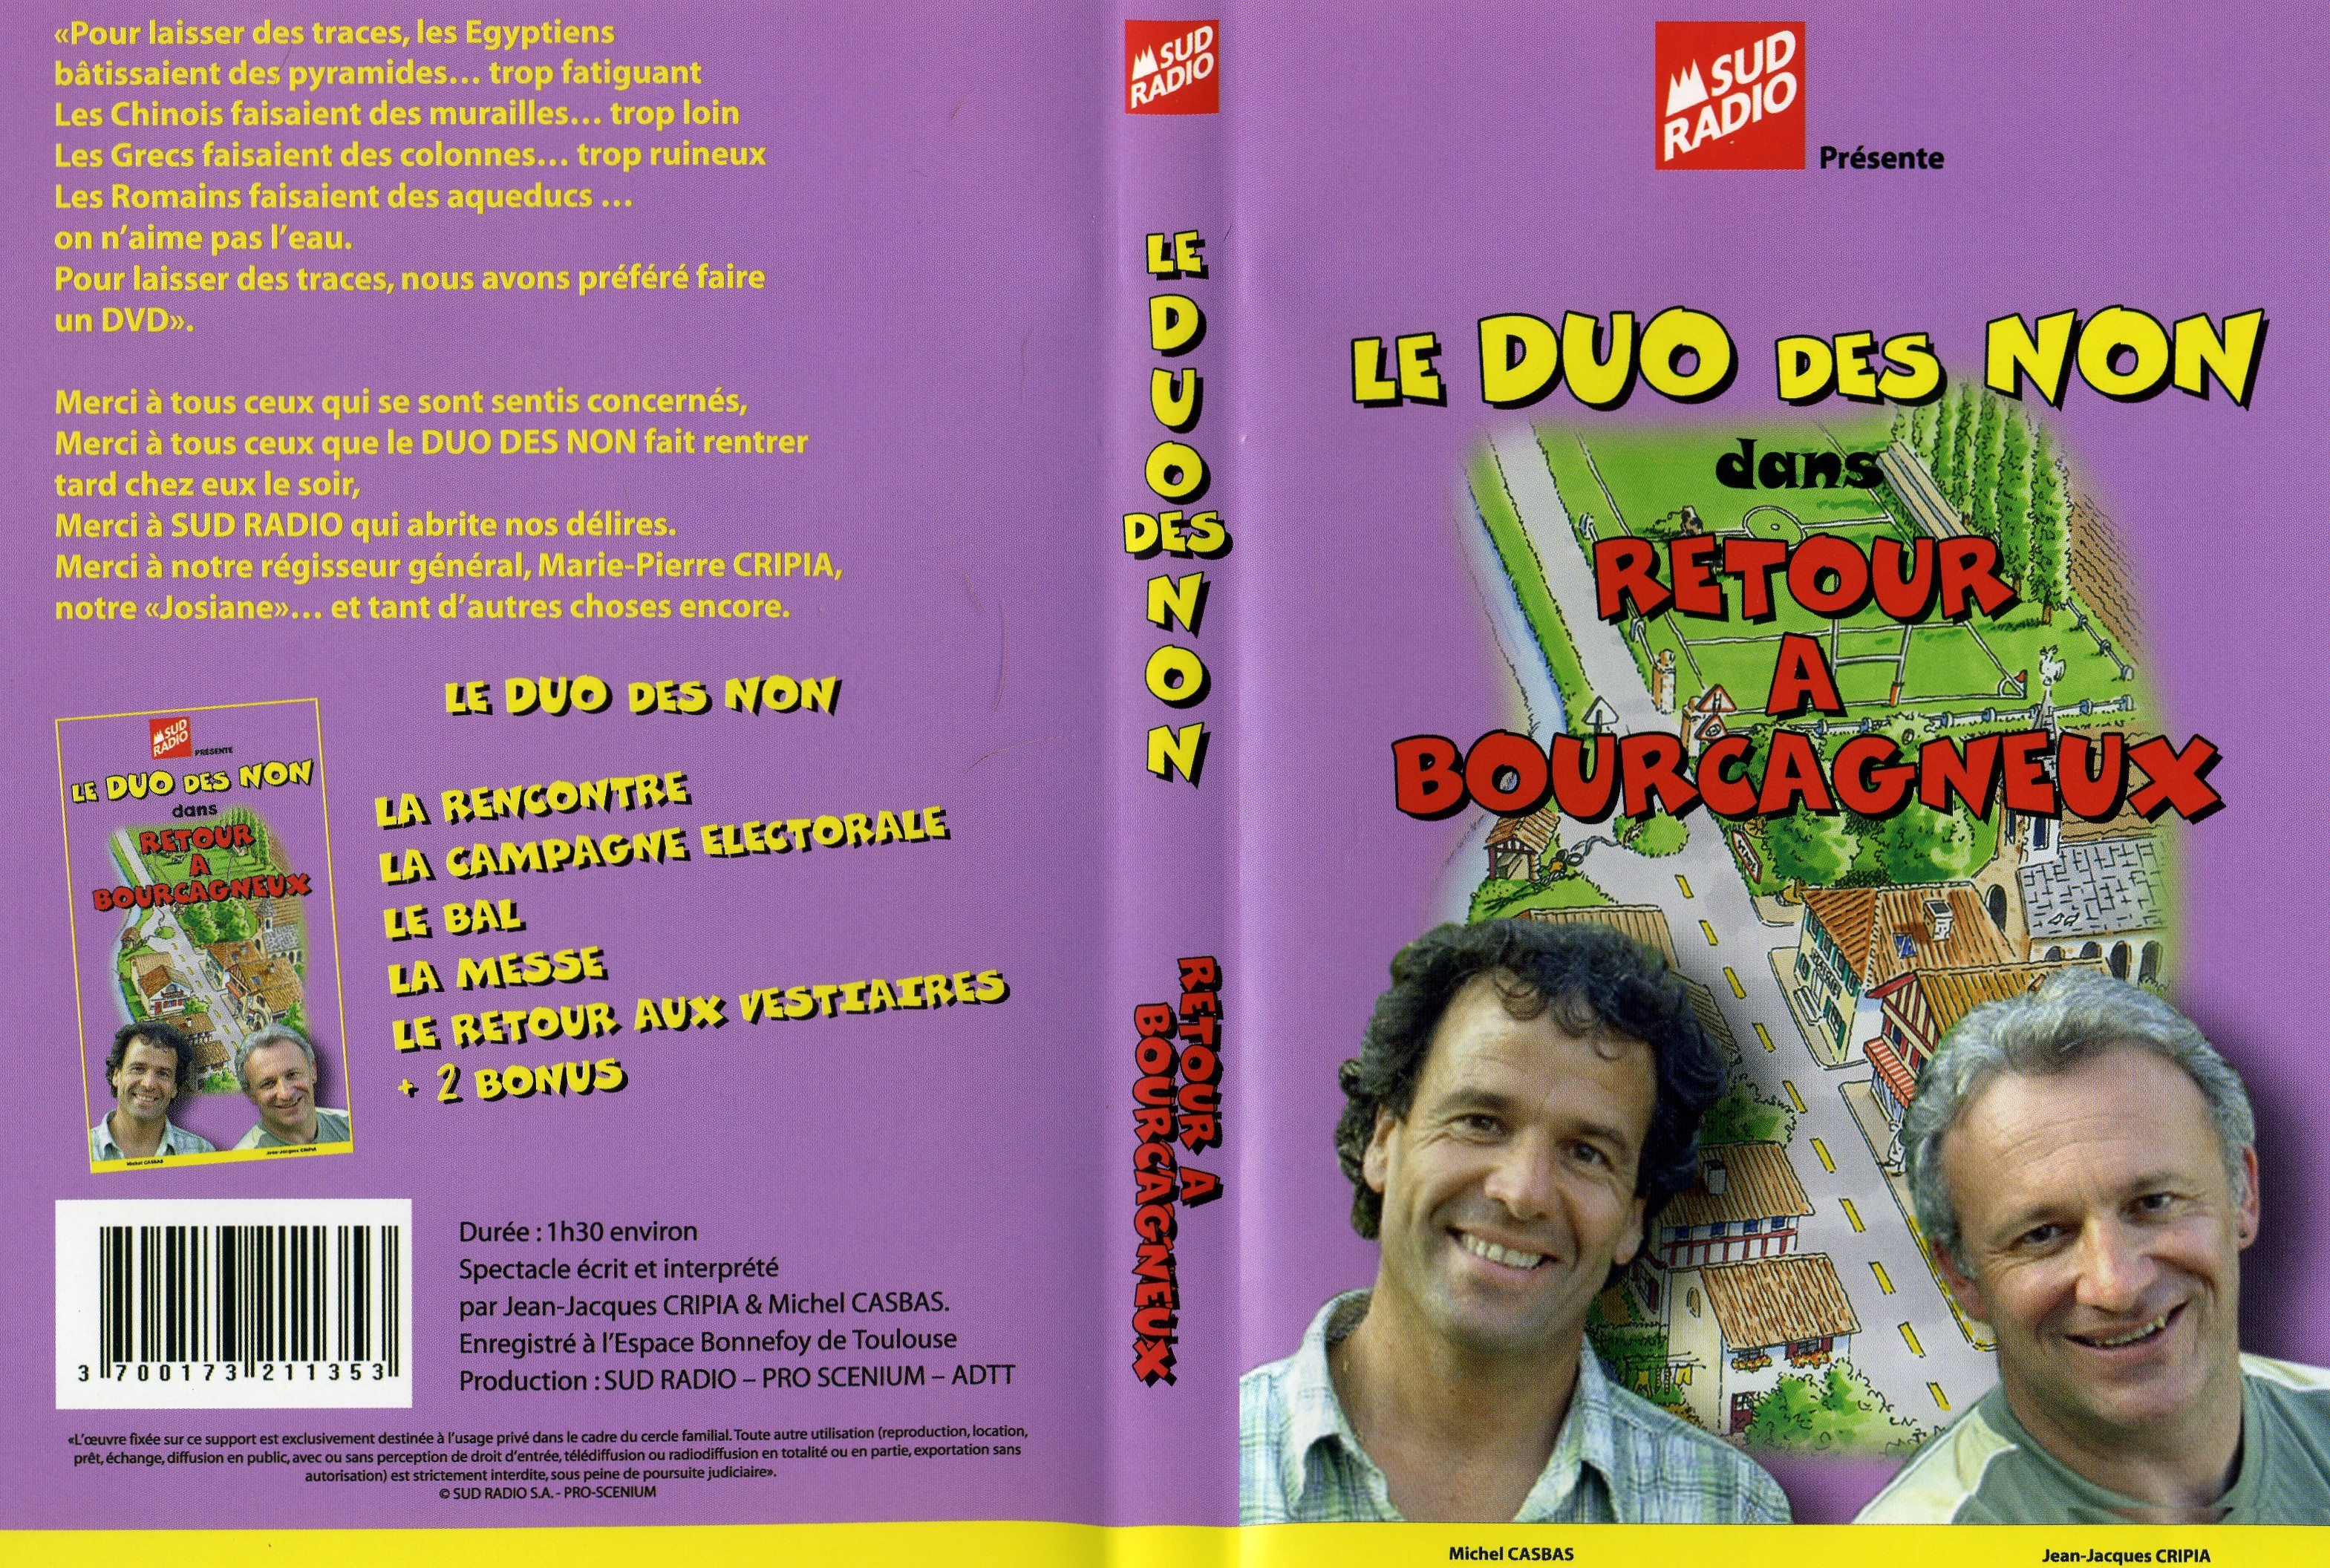 Jaquette DVD Le duo des non - retour  bourgagneux